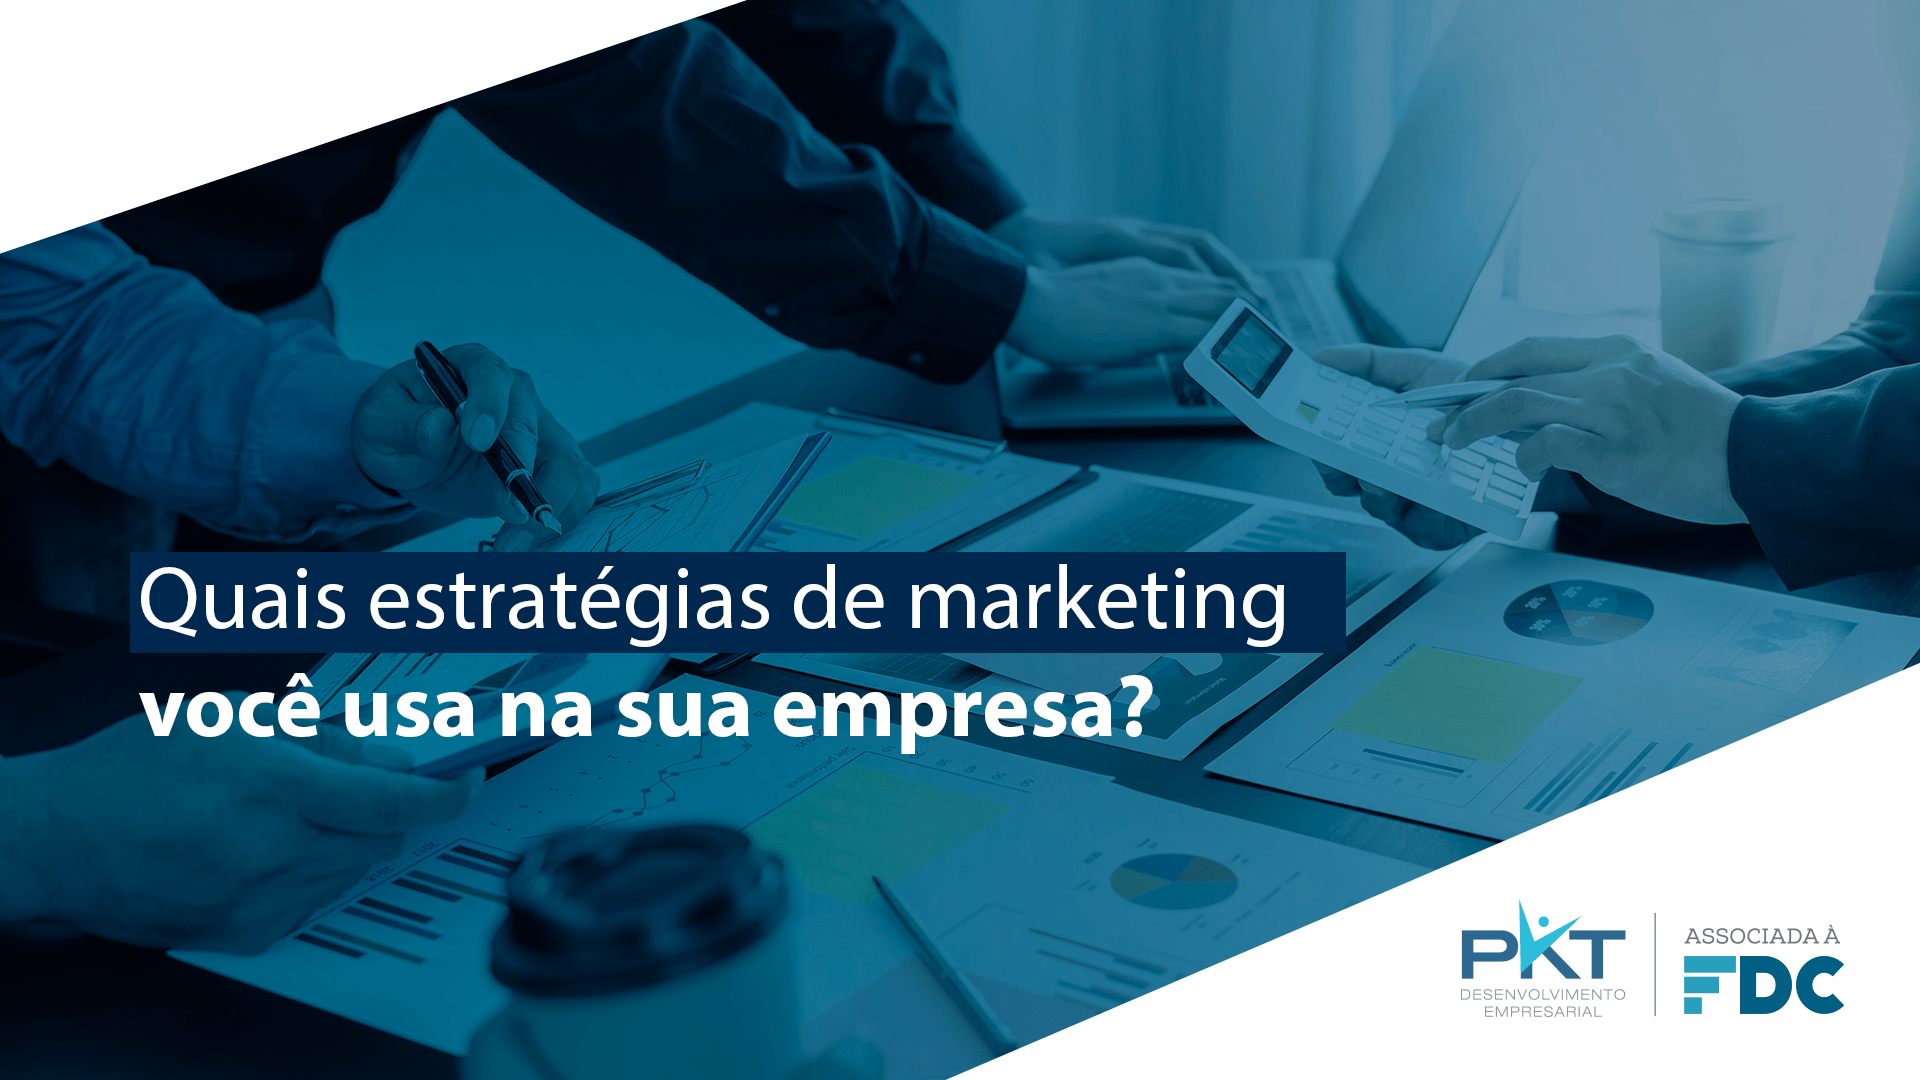 Quais estratégias de marketing você usa na sua empresa?